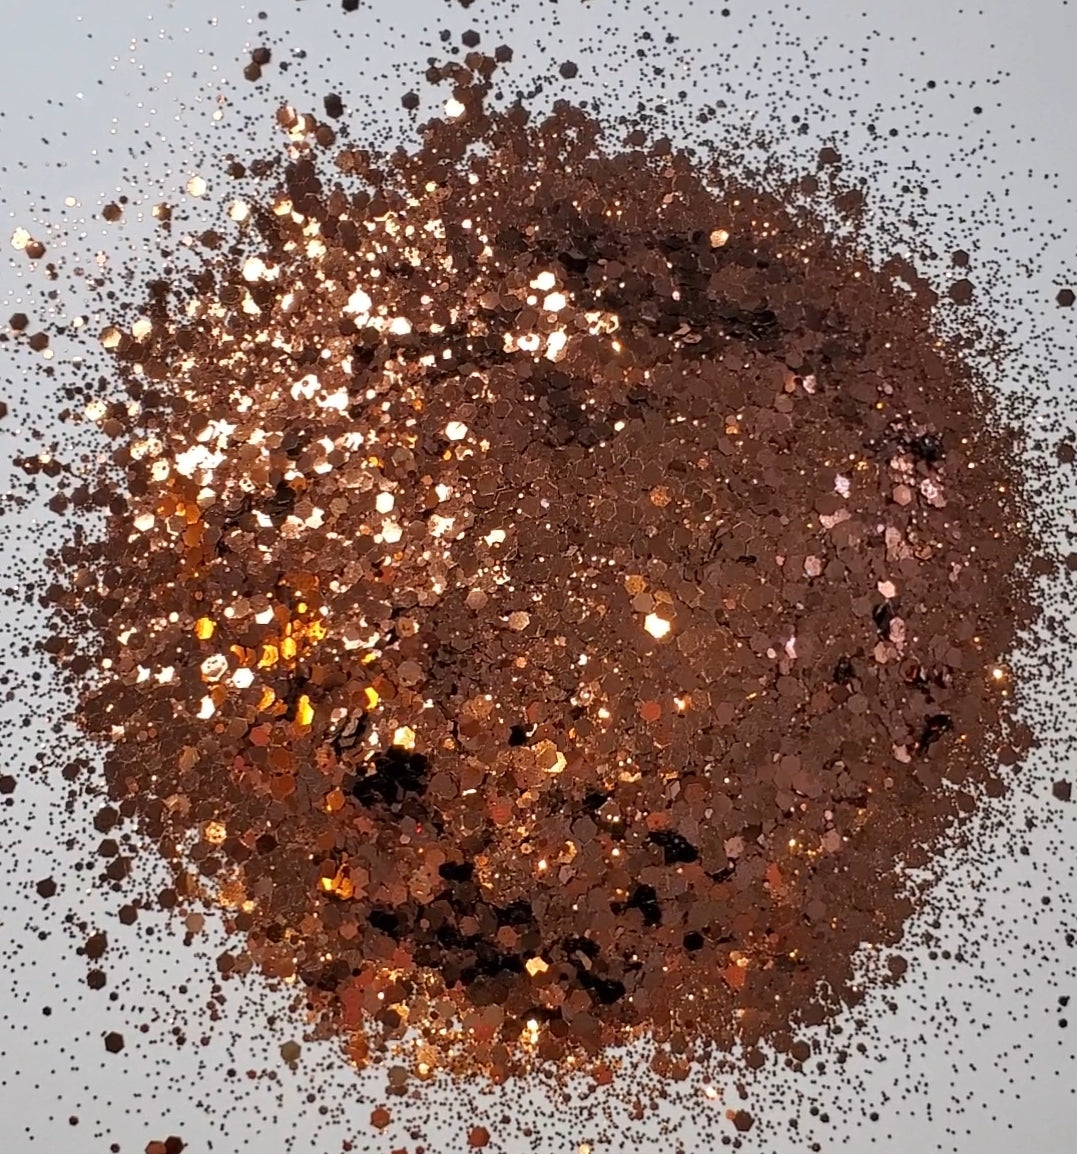 Hot Cocoa - Chunky Mix